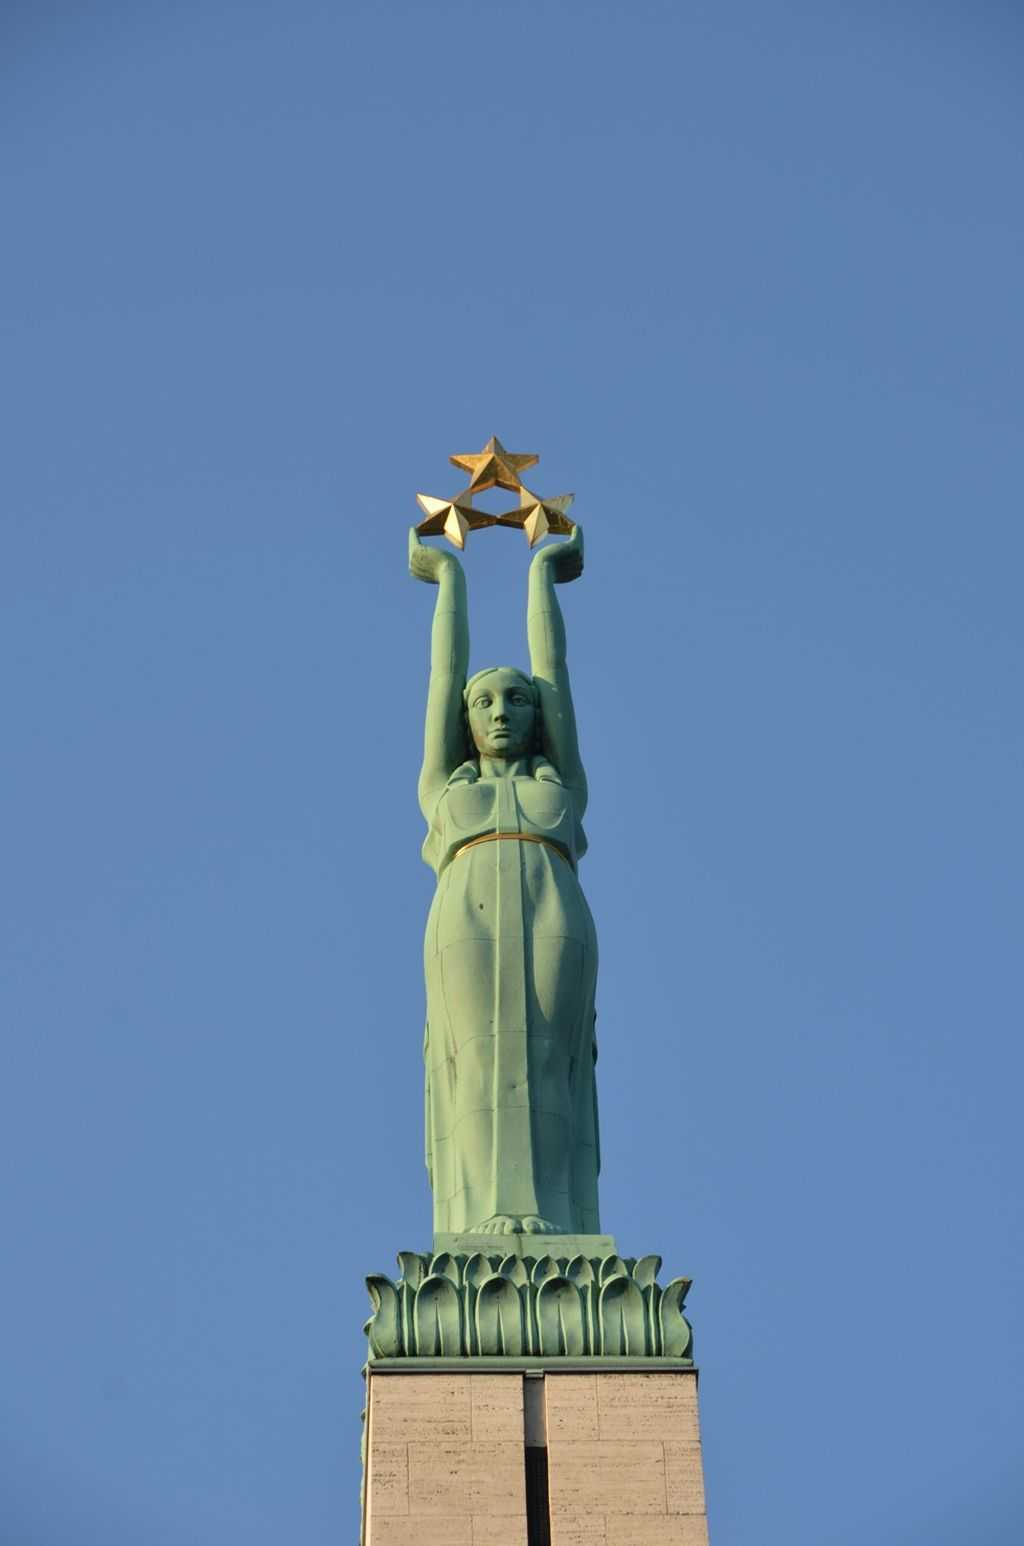 Özgürlük anıtında Milda olarak bilinen bu kadın heykeli üç altın yıldız taşıyor ve bunlar Letonya’nın üç kültürel bölgesini temsil ediyorlar. Kurzeme, Vidzeme ve Latgale. Sovyet döneminde yetkililer halka bu anıta çiçek koymayı yasaklamışlar ve biraz öteye Lenin heykeli yerleştirmişlerdi…